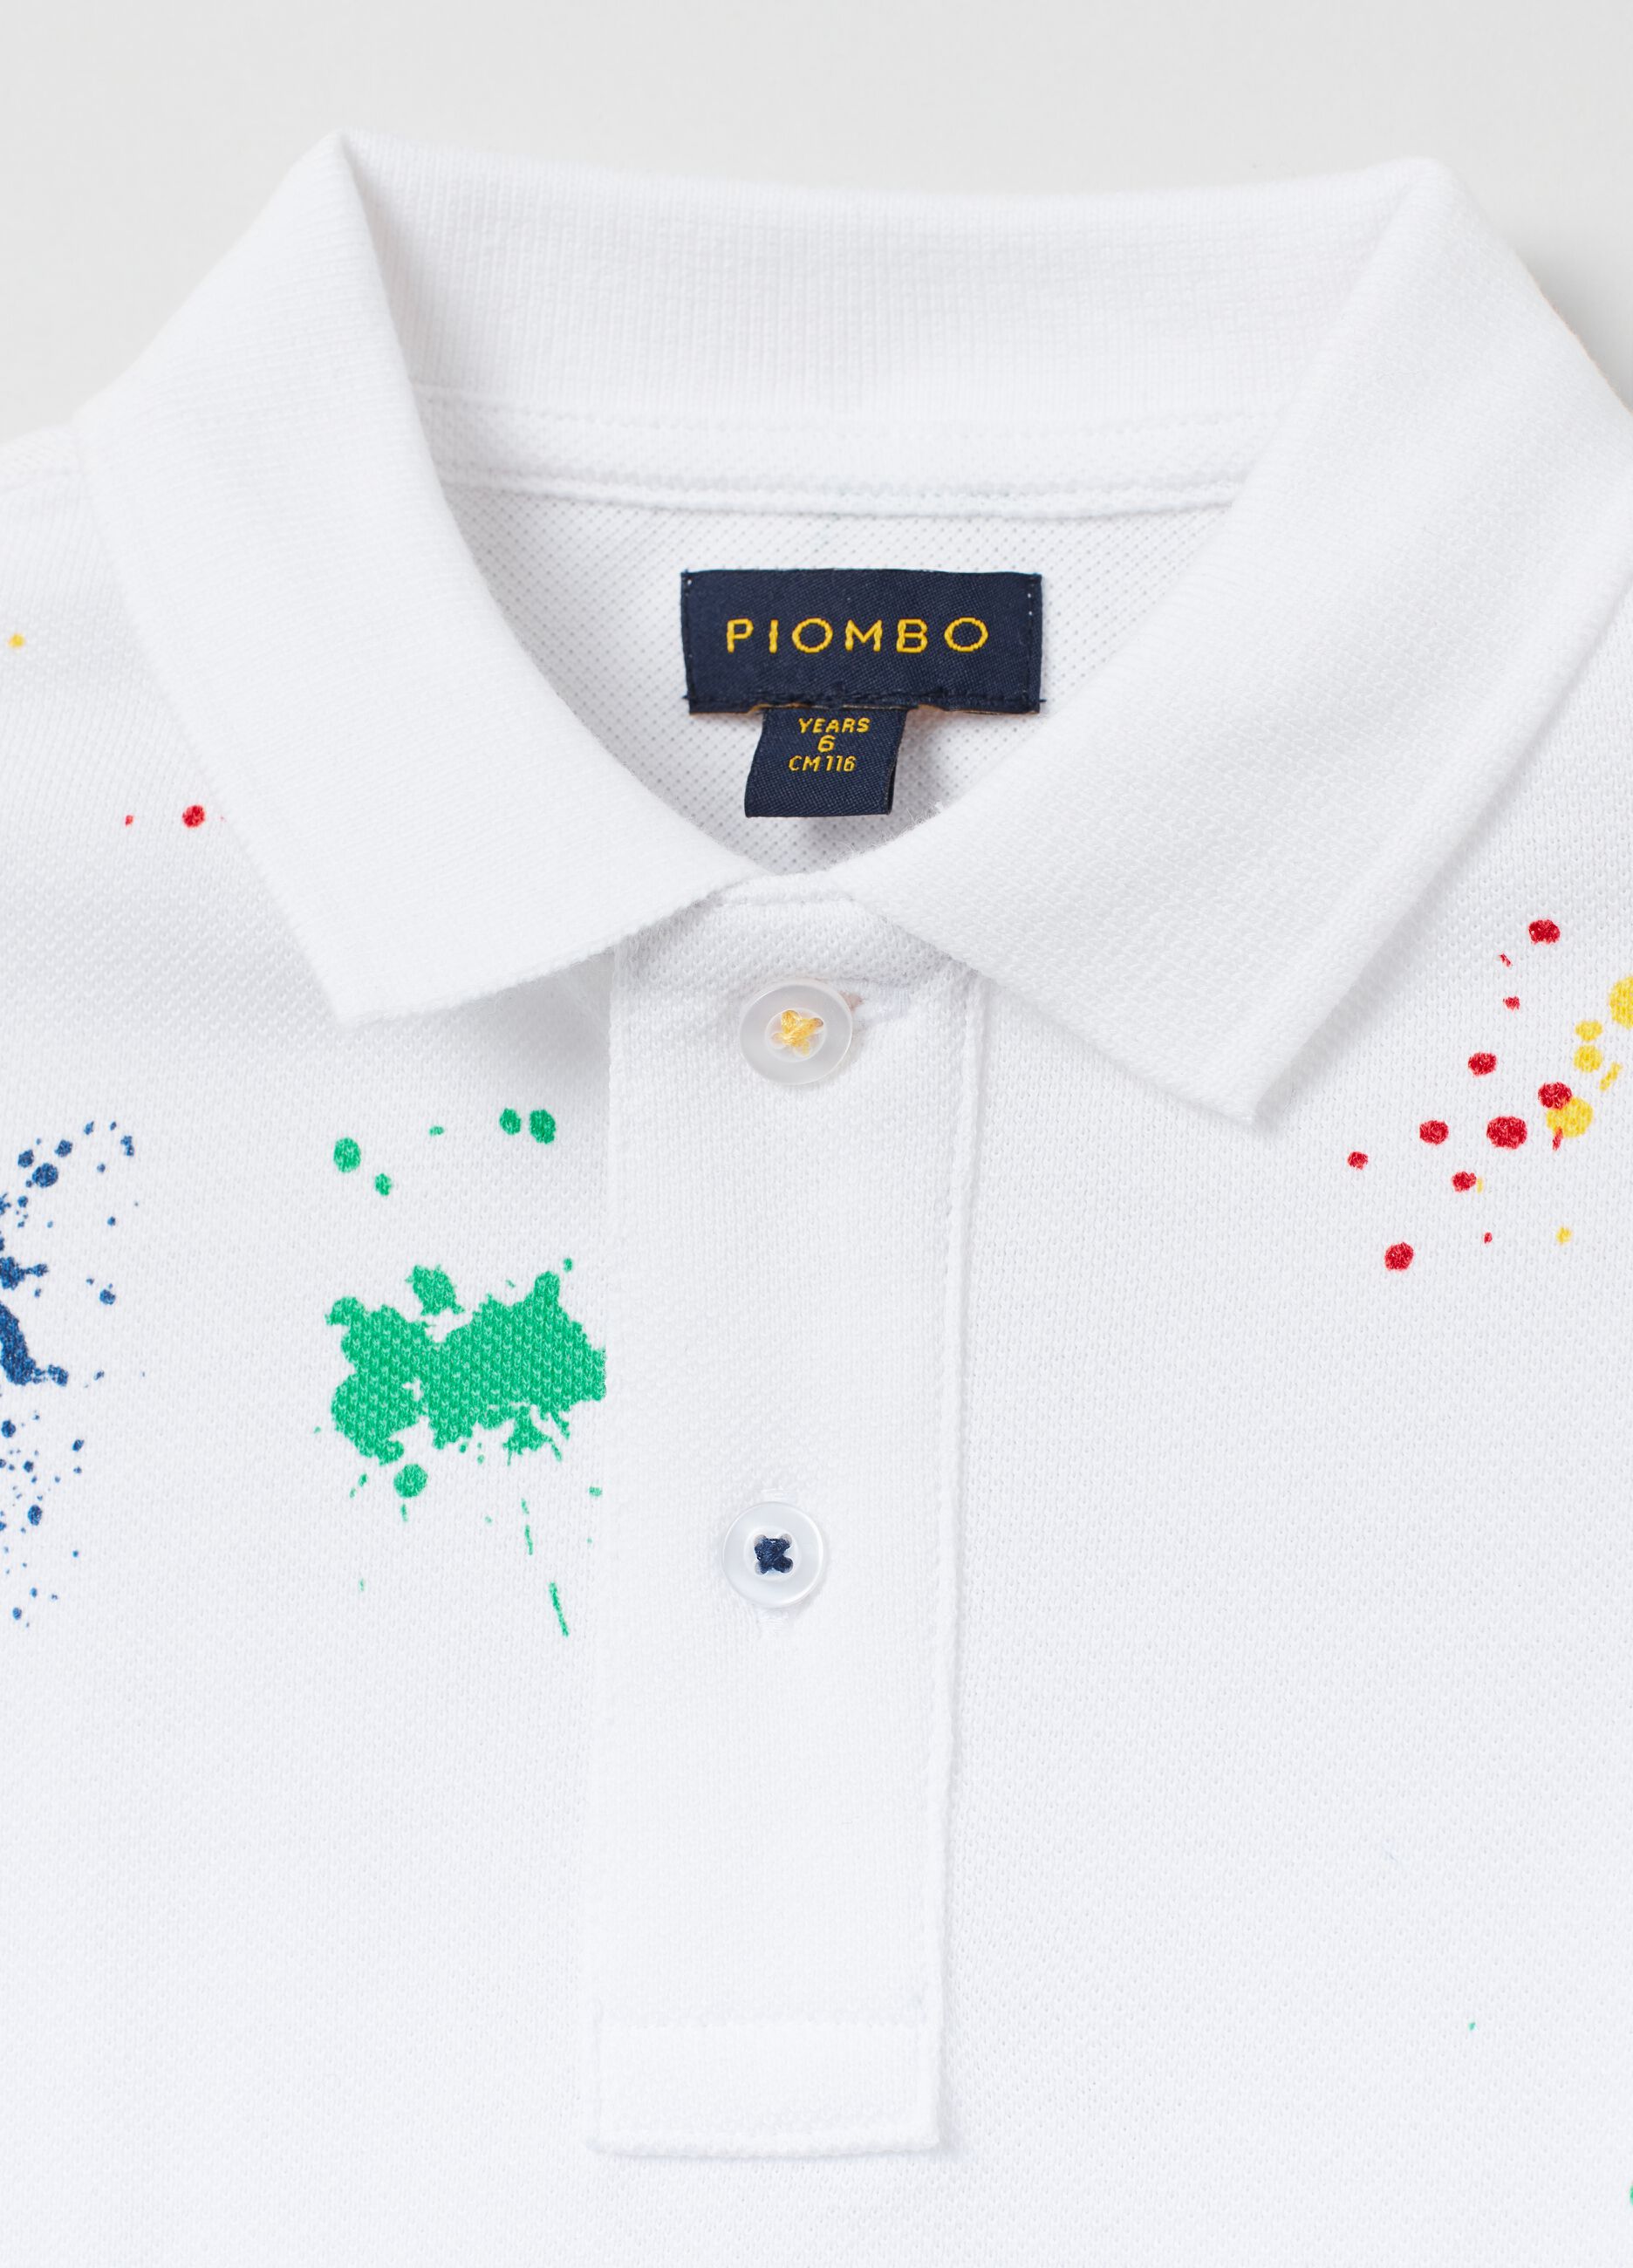 Pique polo shirt with print